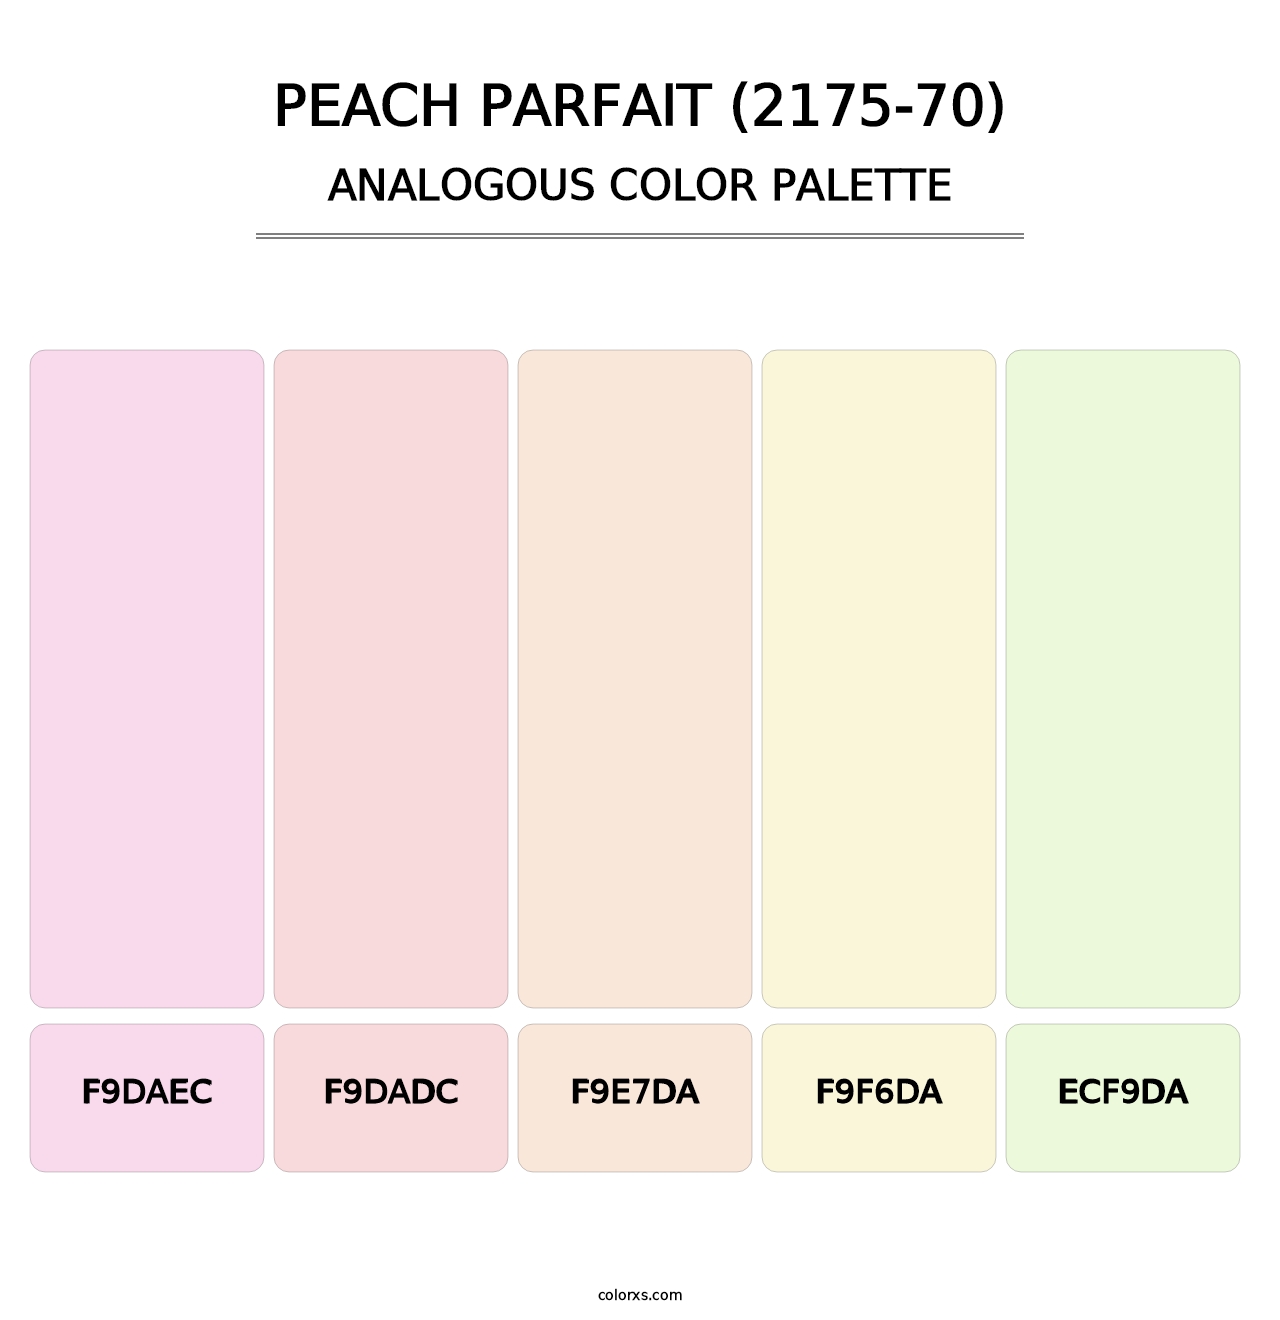 Peach Parfait (2175-70) - Analogous Color Palette